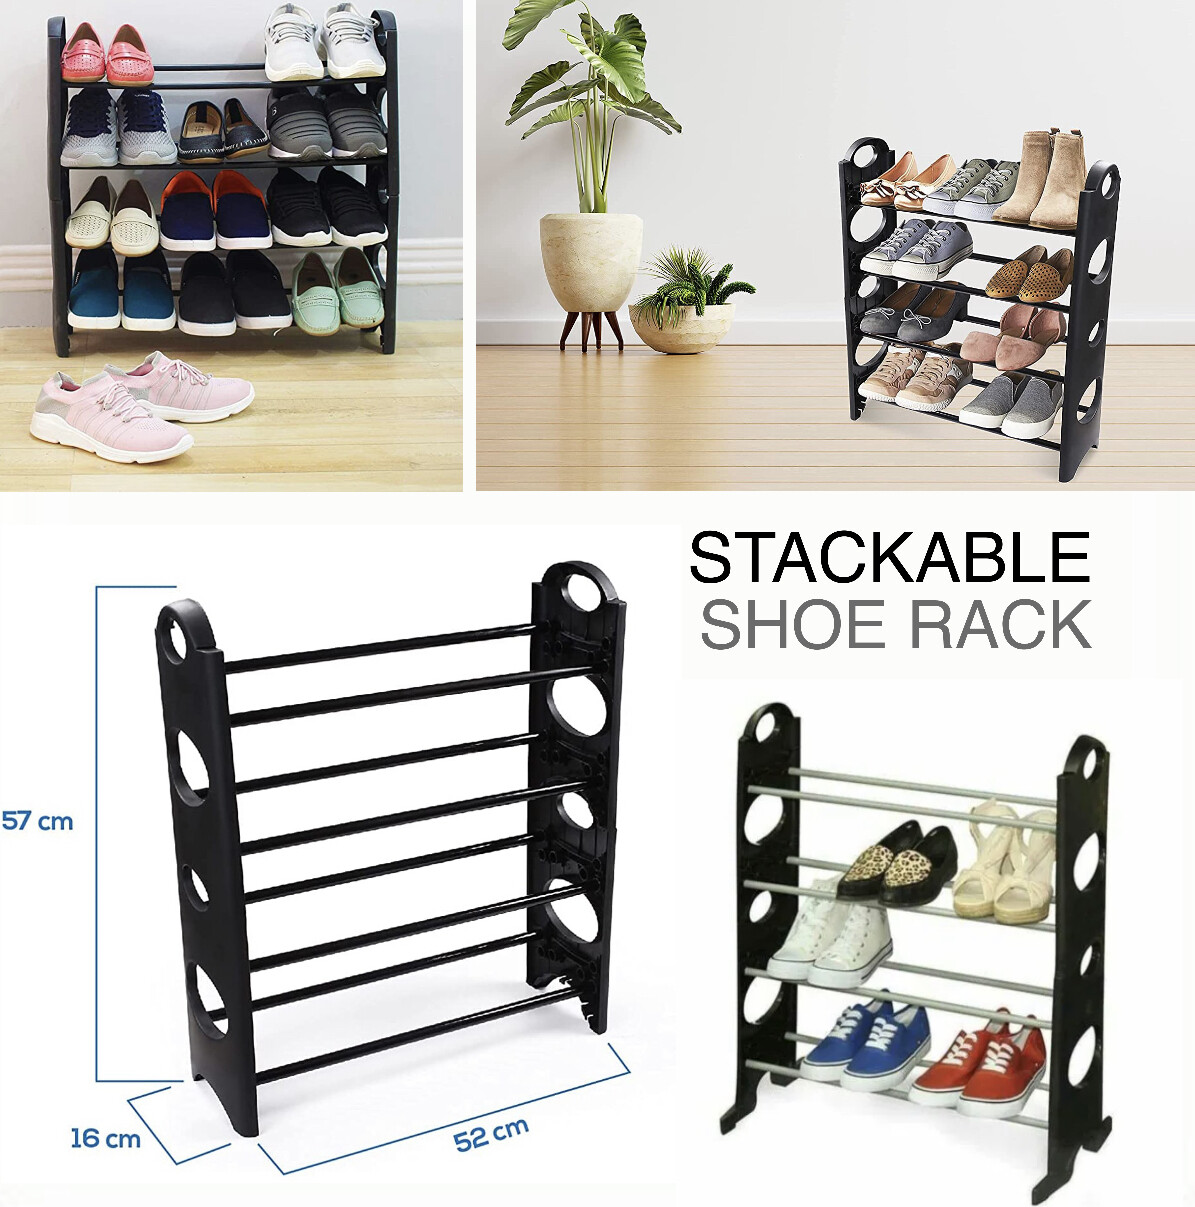 Stackable Shoe Rack